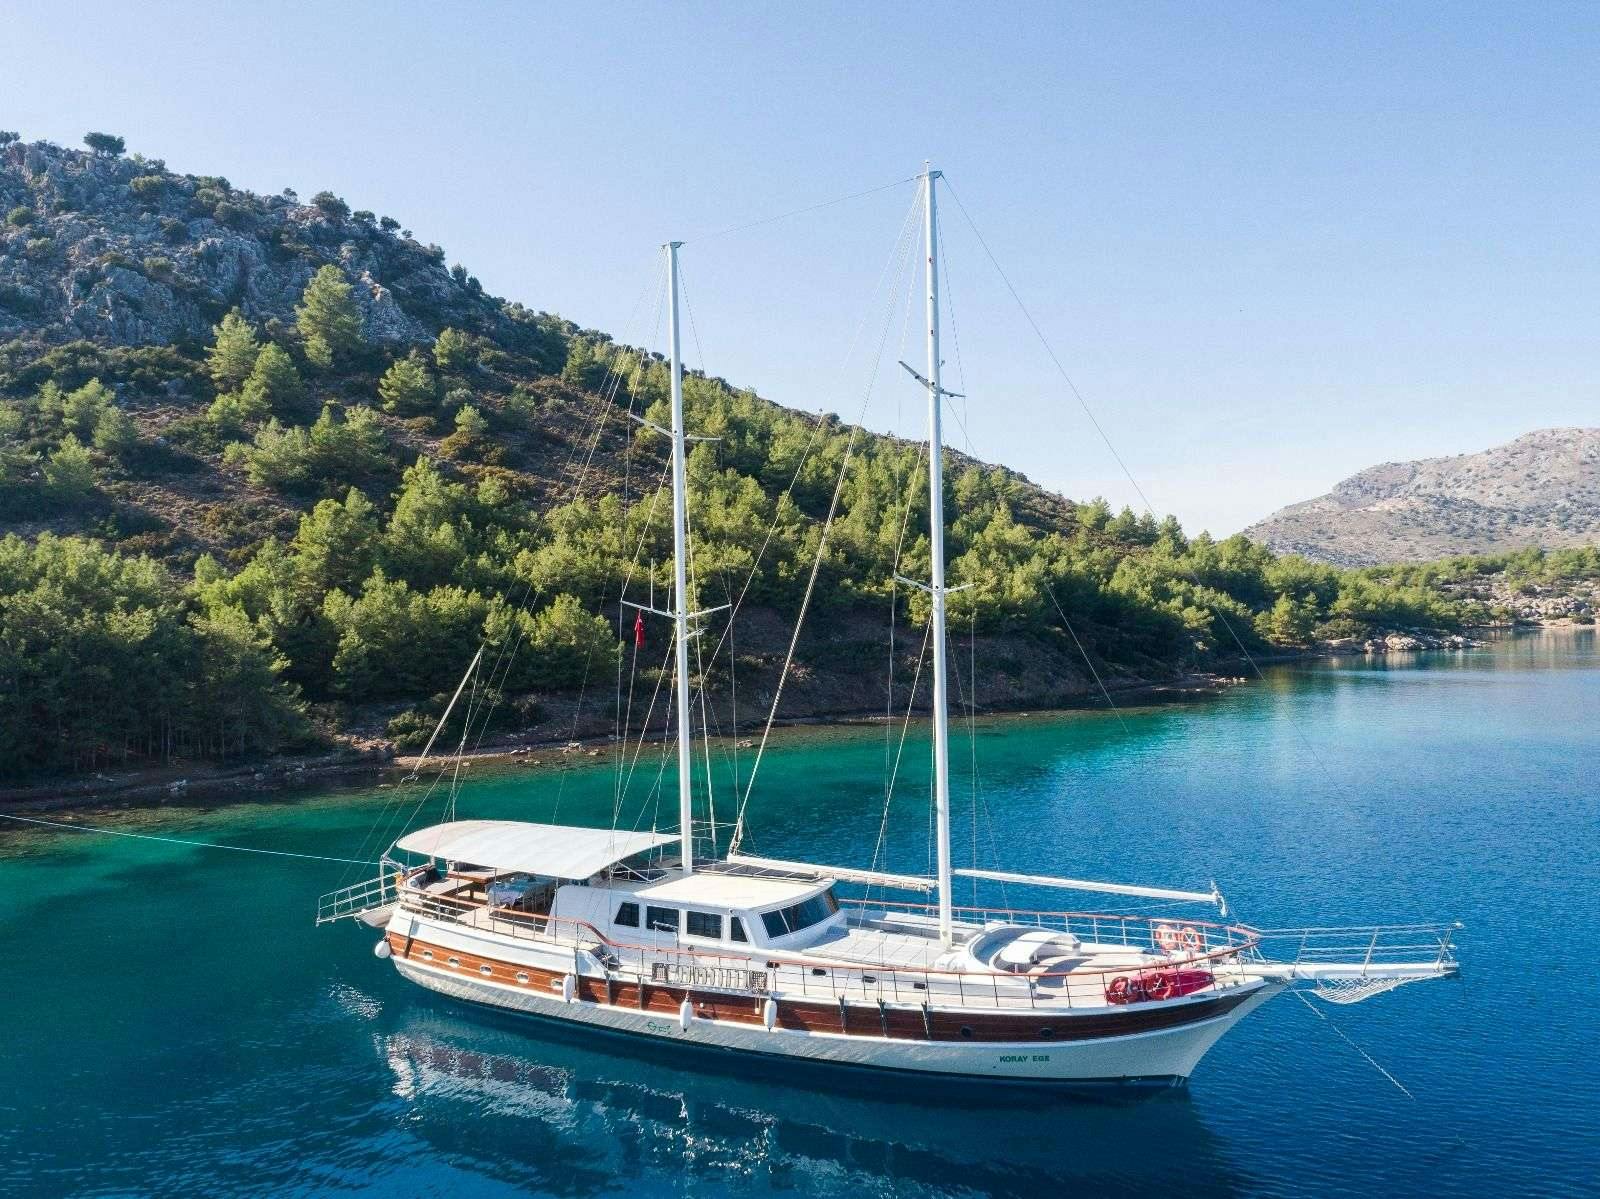 koray ege - Motor Boat Charter Turkey & Boat hire in Greece & Turkey 1